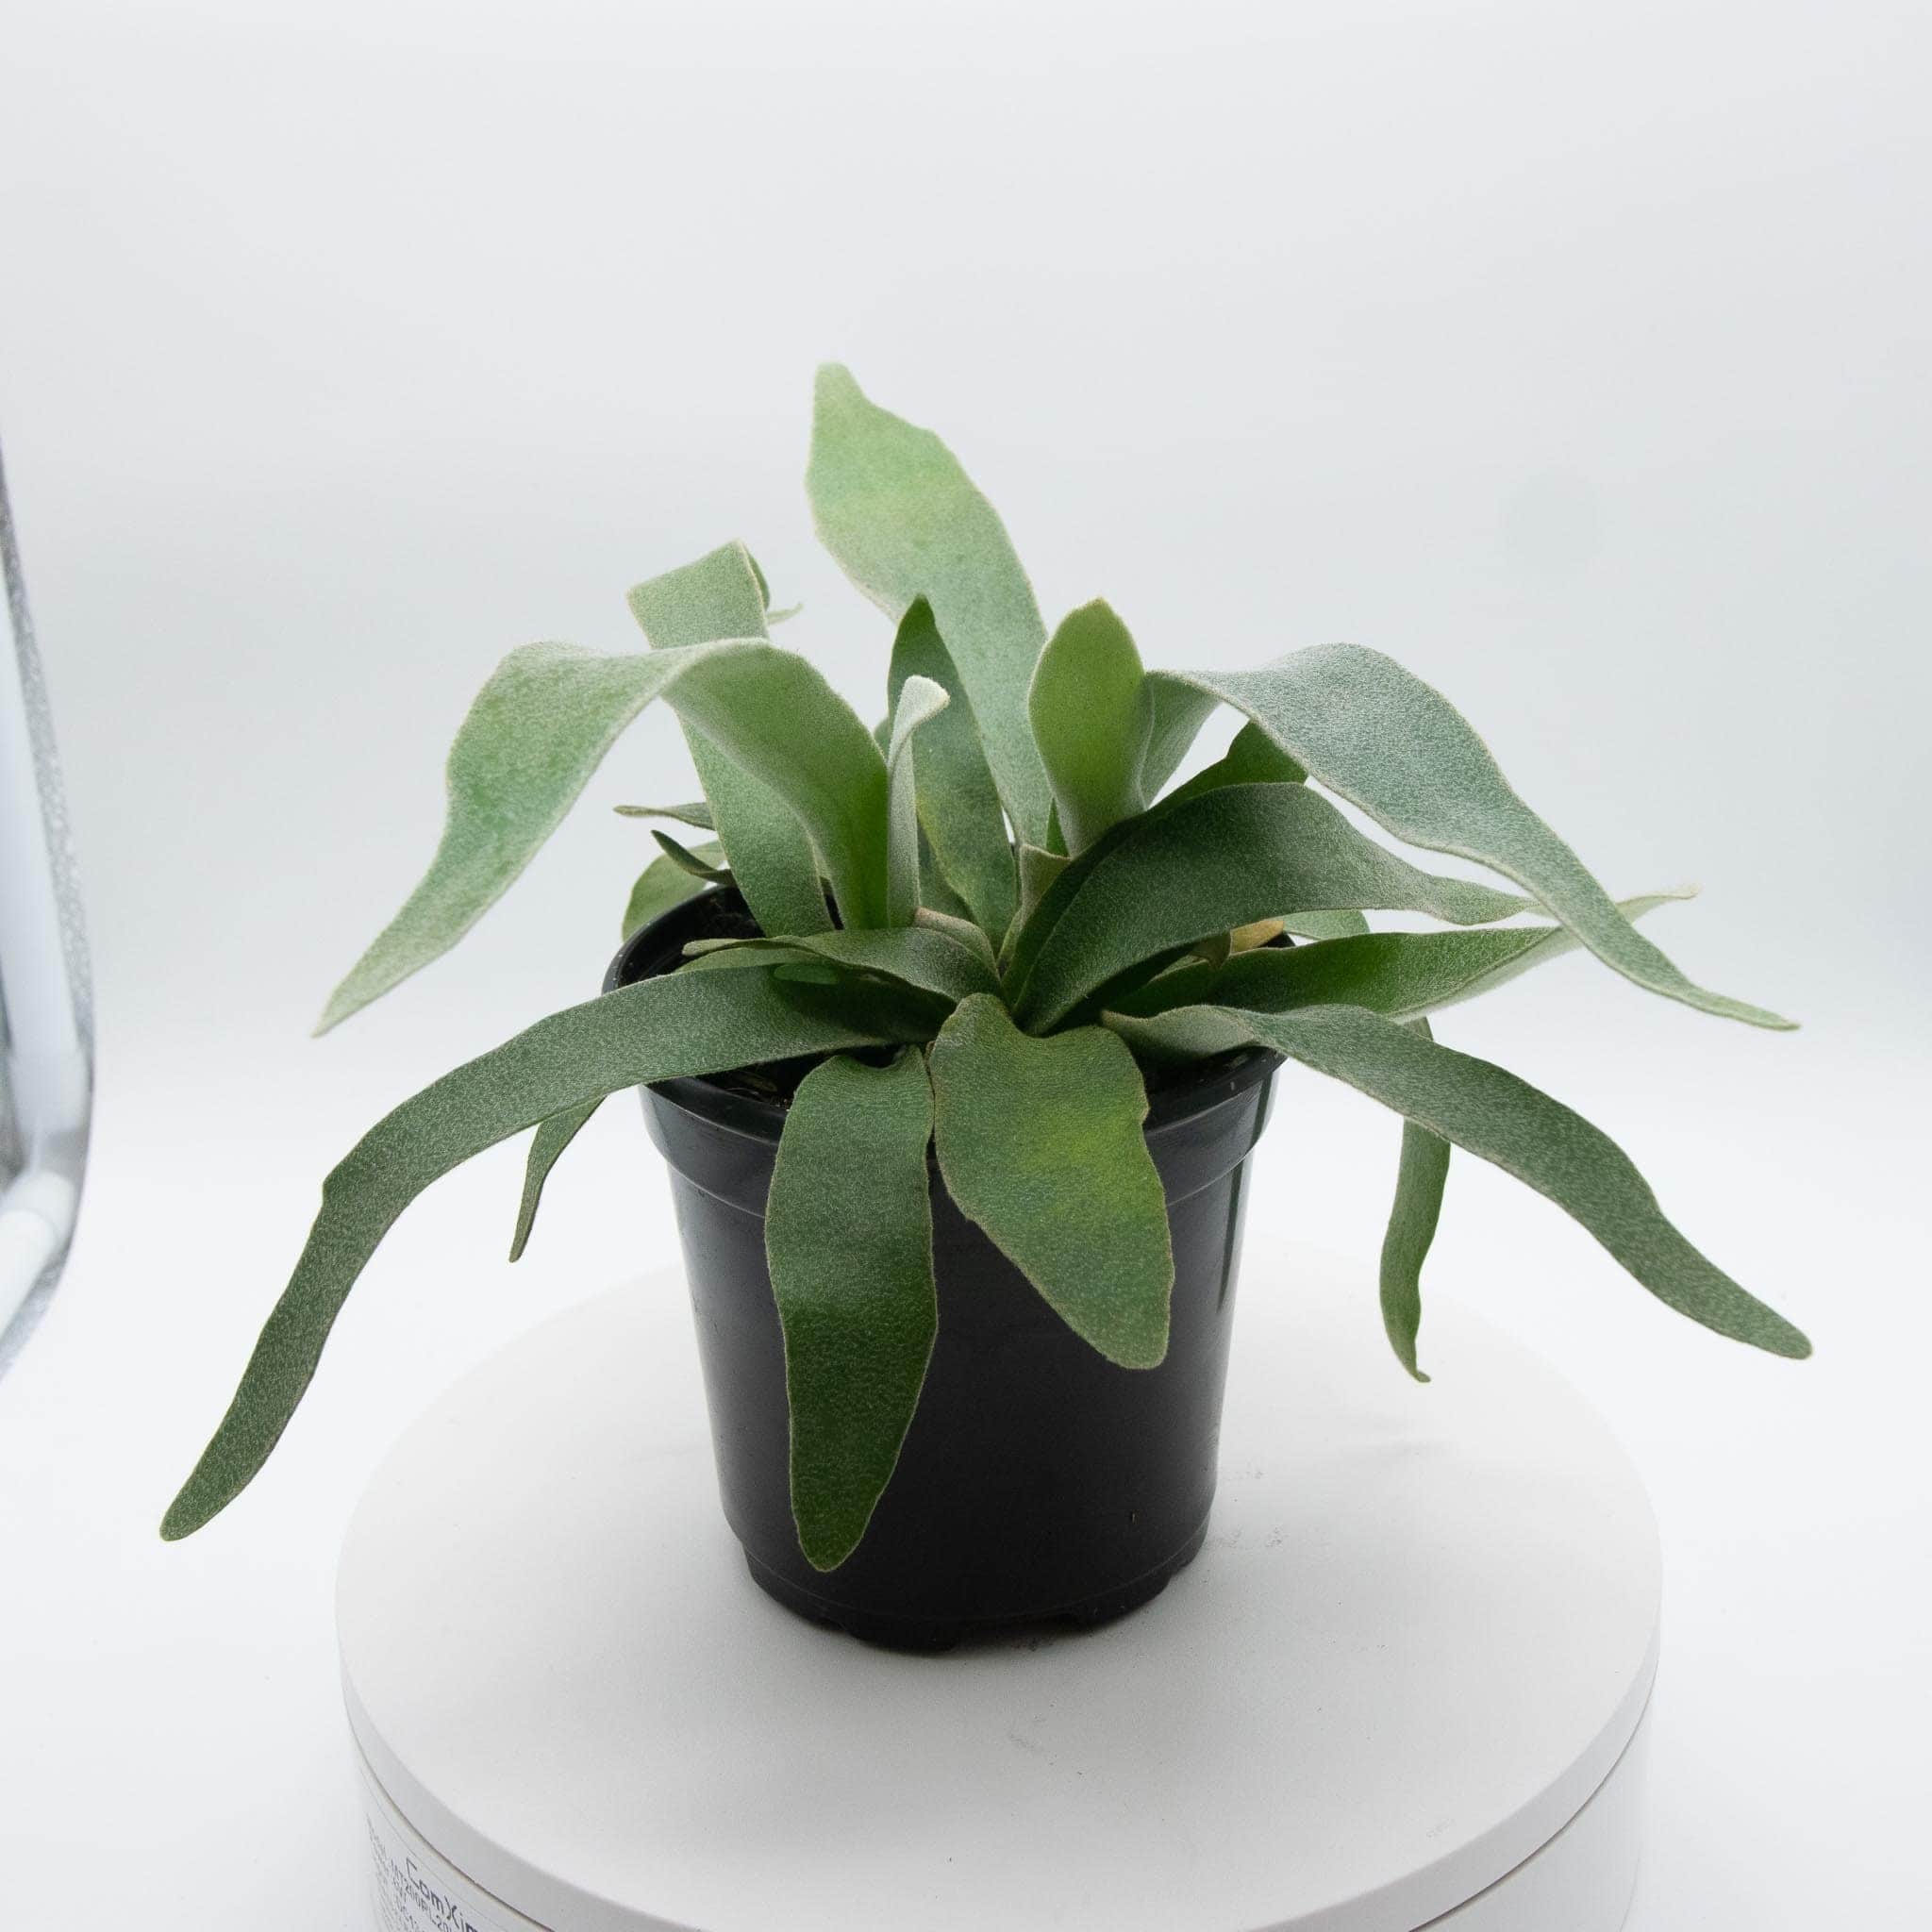 Gabriella Plants Fern 4" Fern Staghorn - platycerium veitchii ‘Lemoinei’